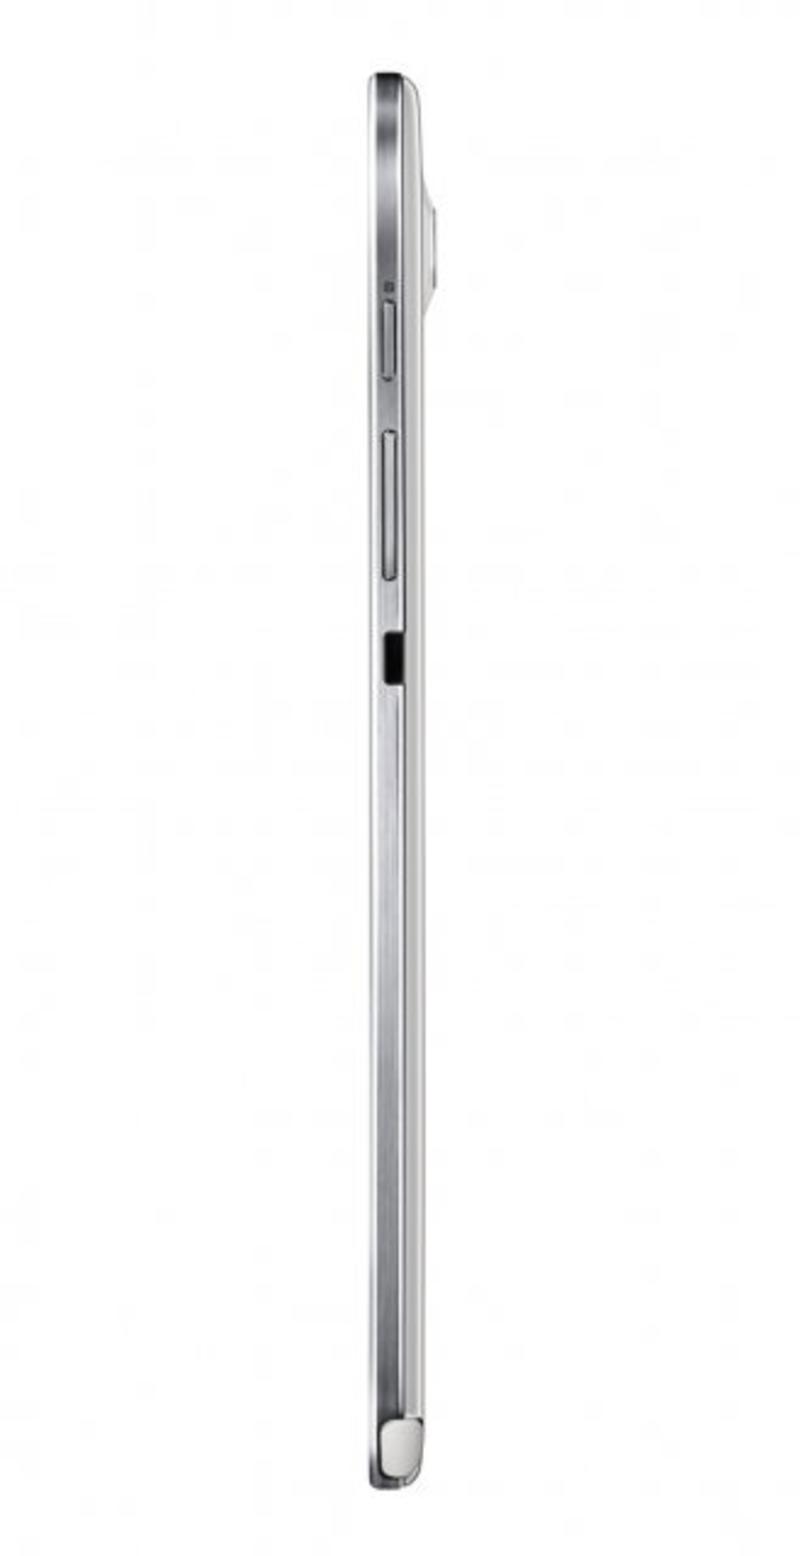 Самый тонкий: представлен главный конкурент iPad mini / engadget.com